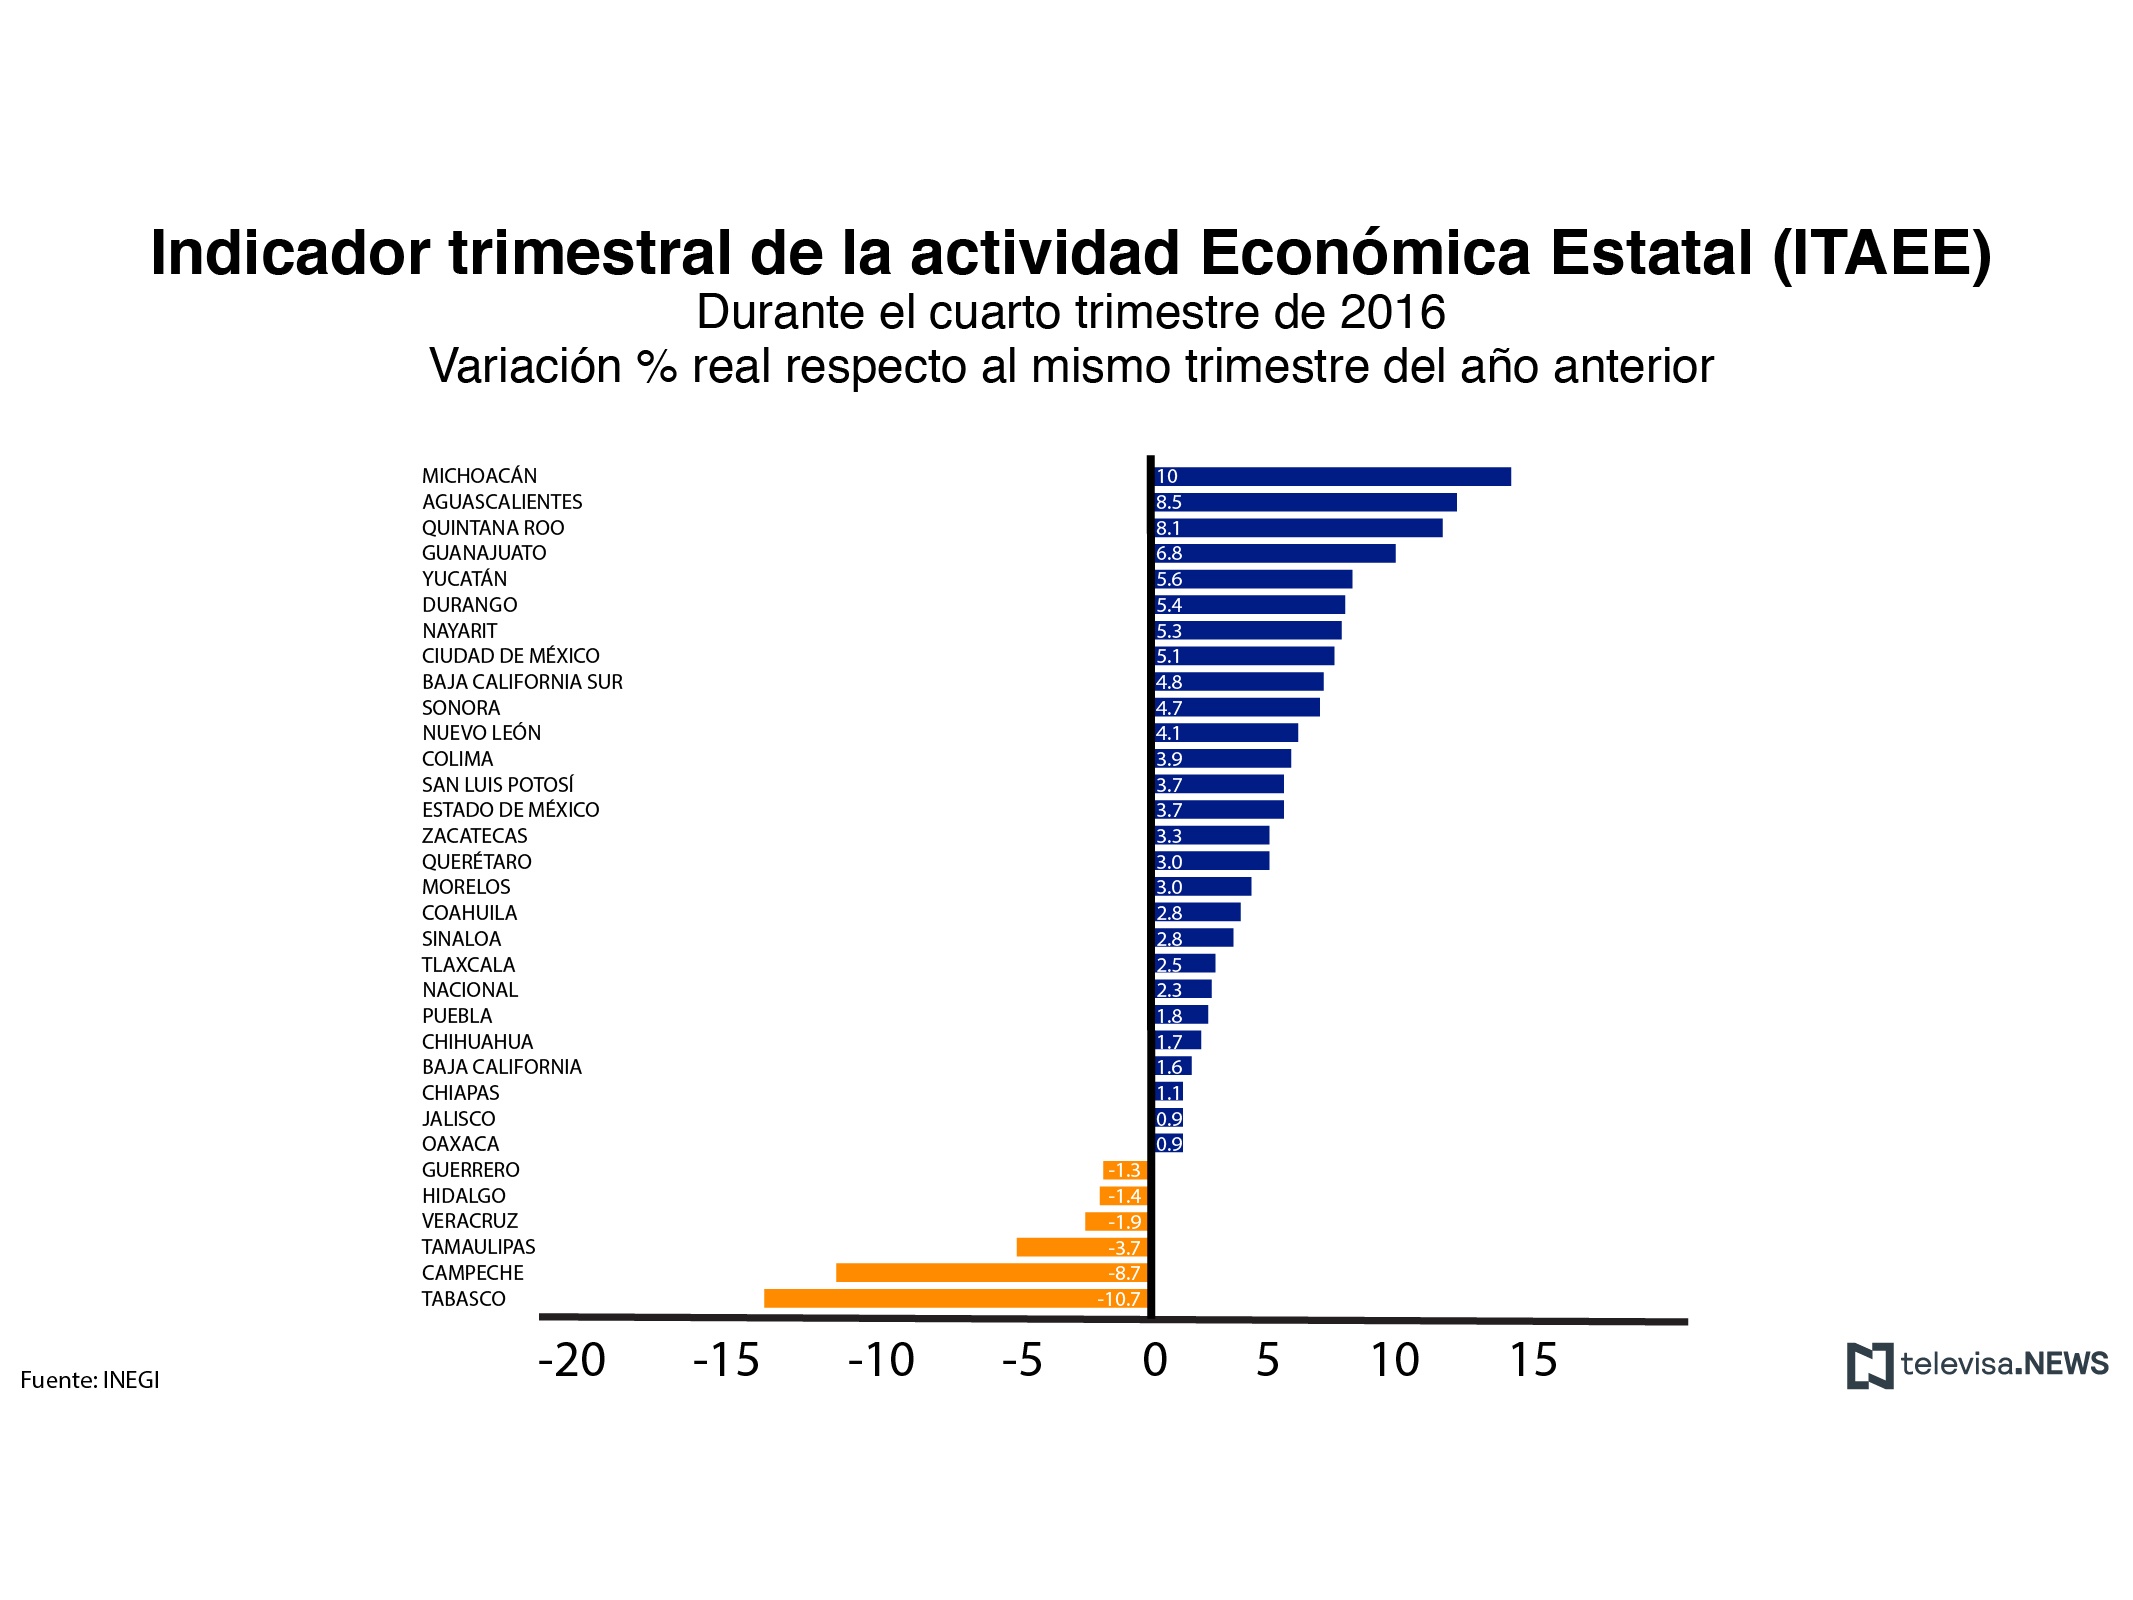 Indicador trimestral de la actividad económica estatal, con datos del INEGI. (Noticieros Televisa)